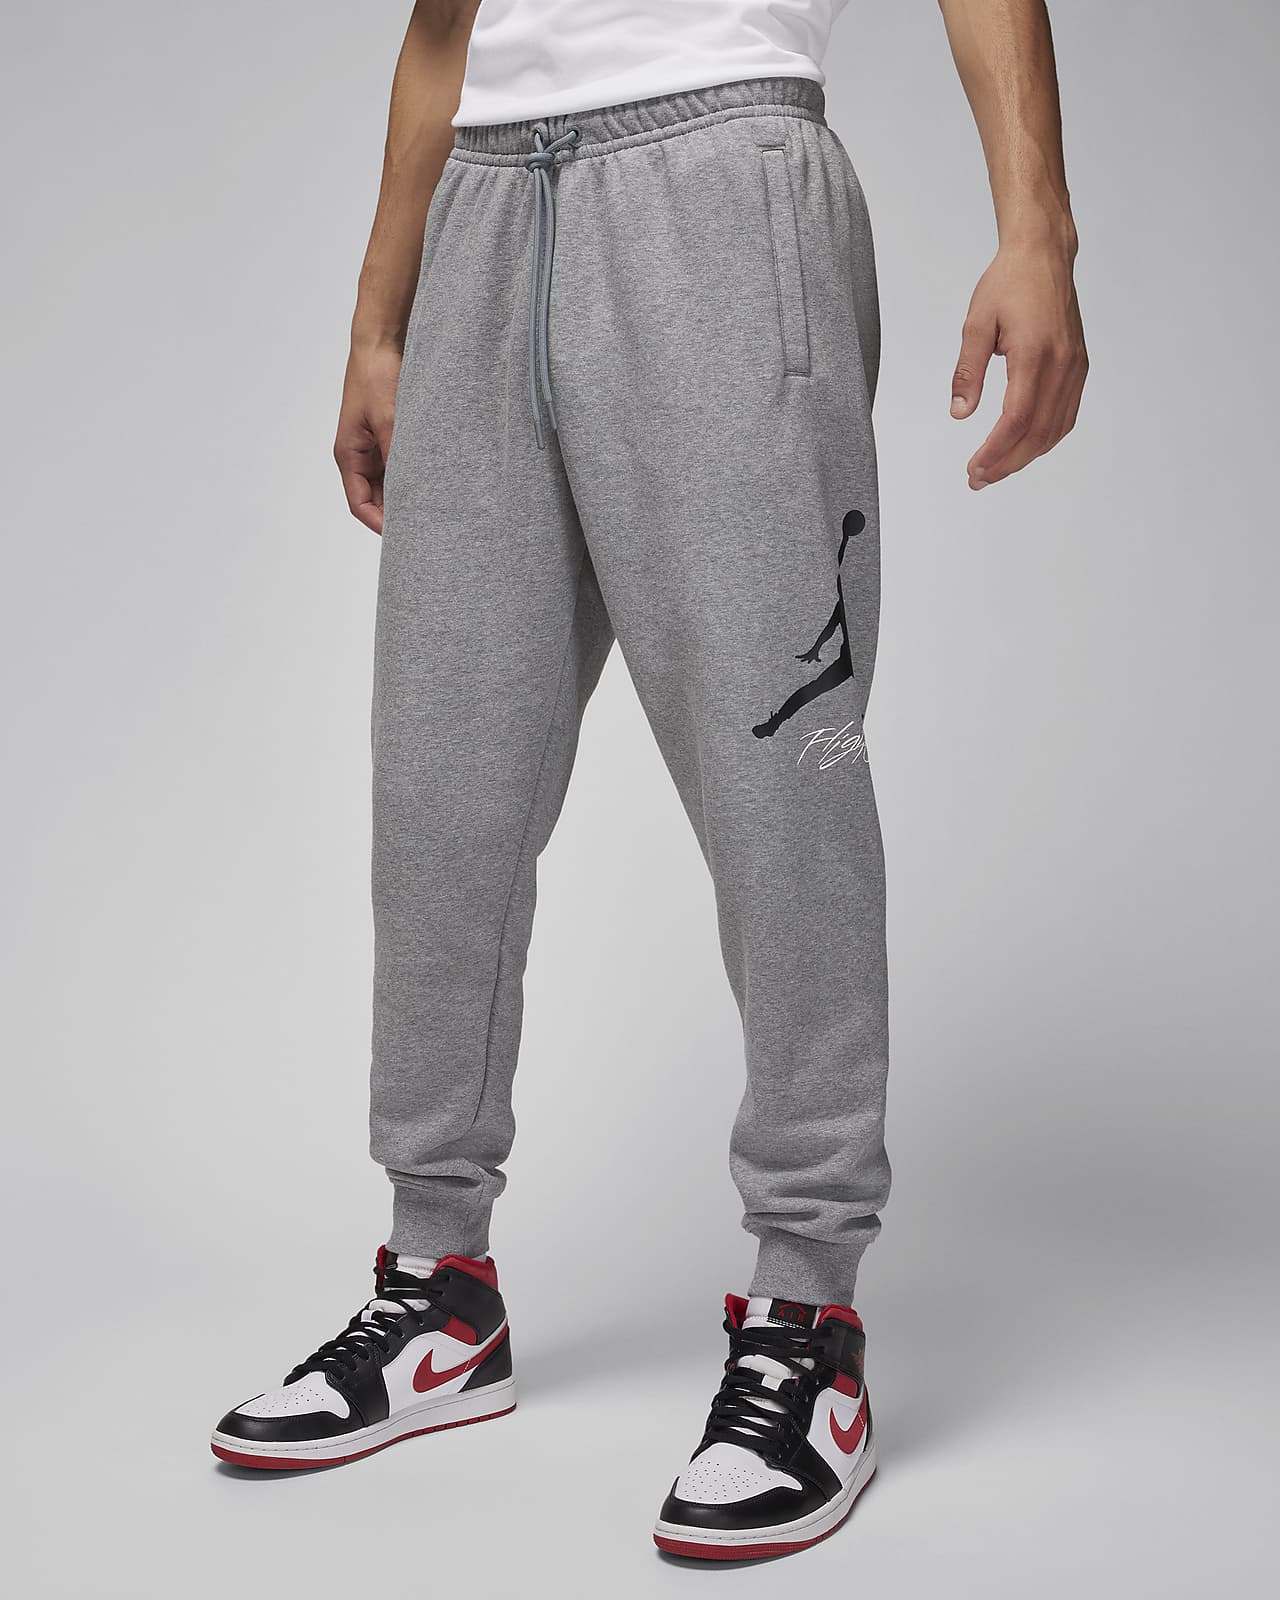 Buy Nike Men's Sportswear Just Do It Fleece Pants Black in KSA -SSS